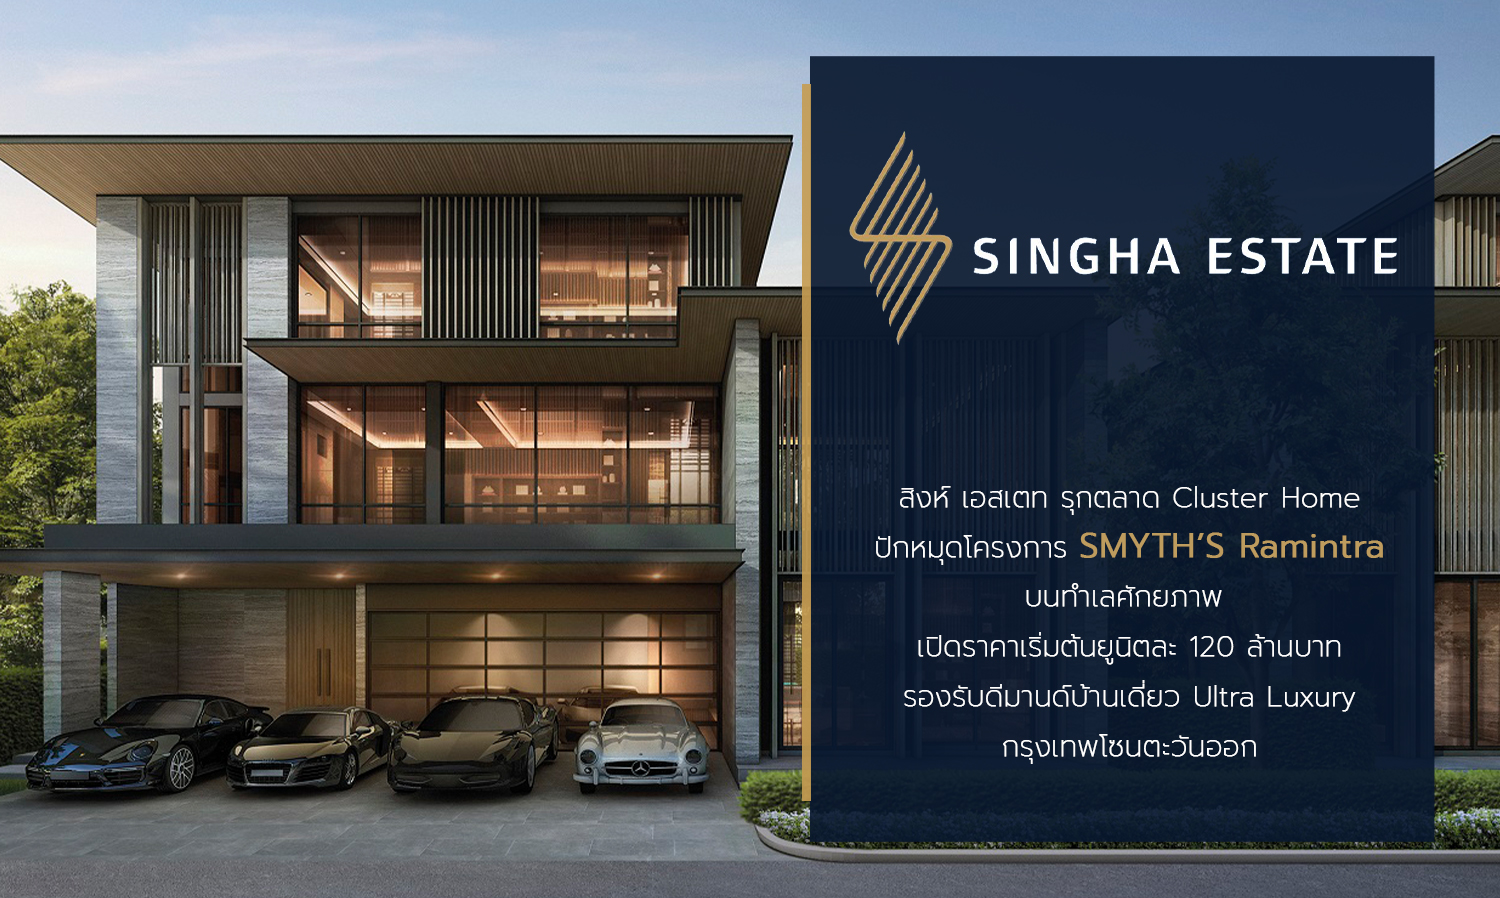 สิงห์ เอสเตท รุกตลาด Cluster Home ปักหมุดโครงการ SMYTH’S Ramintra บนทำเลศักยภาพ เปิดราคาเริ่มต้นยูนิตละ 120 ล้านบาท รองรับดีมานด์บ้านเดี่ยว Ultra Luxury กรุงเทพโซนตะวันออก